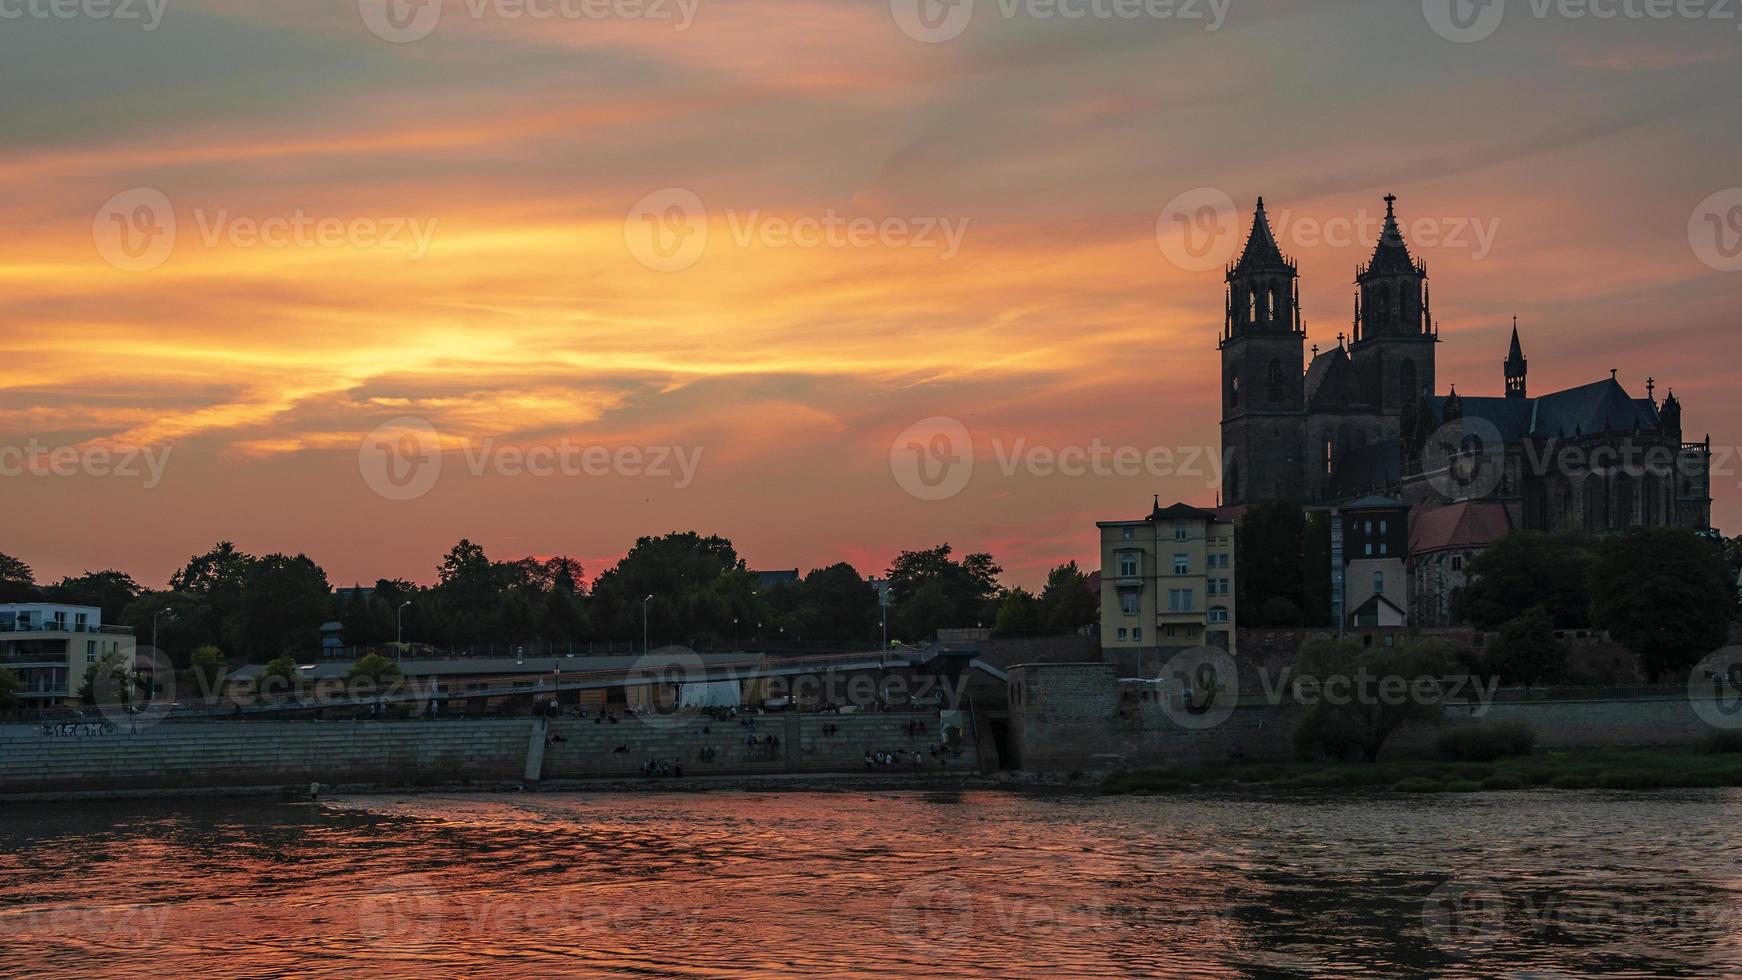 vue panoramique sur la silhouette d'un château médiéval au beau coucher de soleil sanglant au centre-ville historique de magdebourg, vieille ville, fleuve elbe et magnifique cathédrale, allemagne. photo